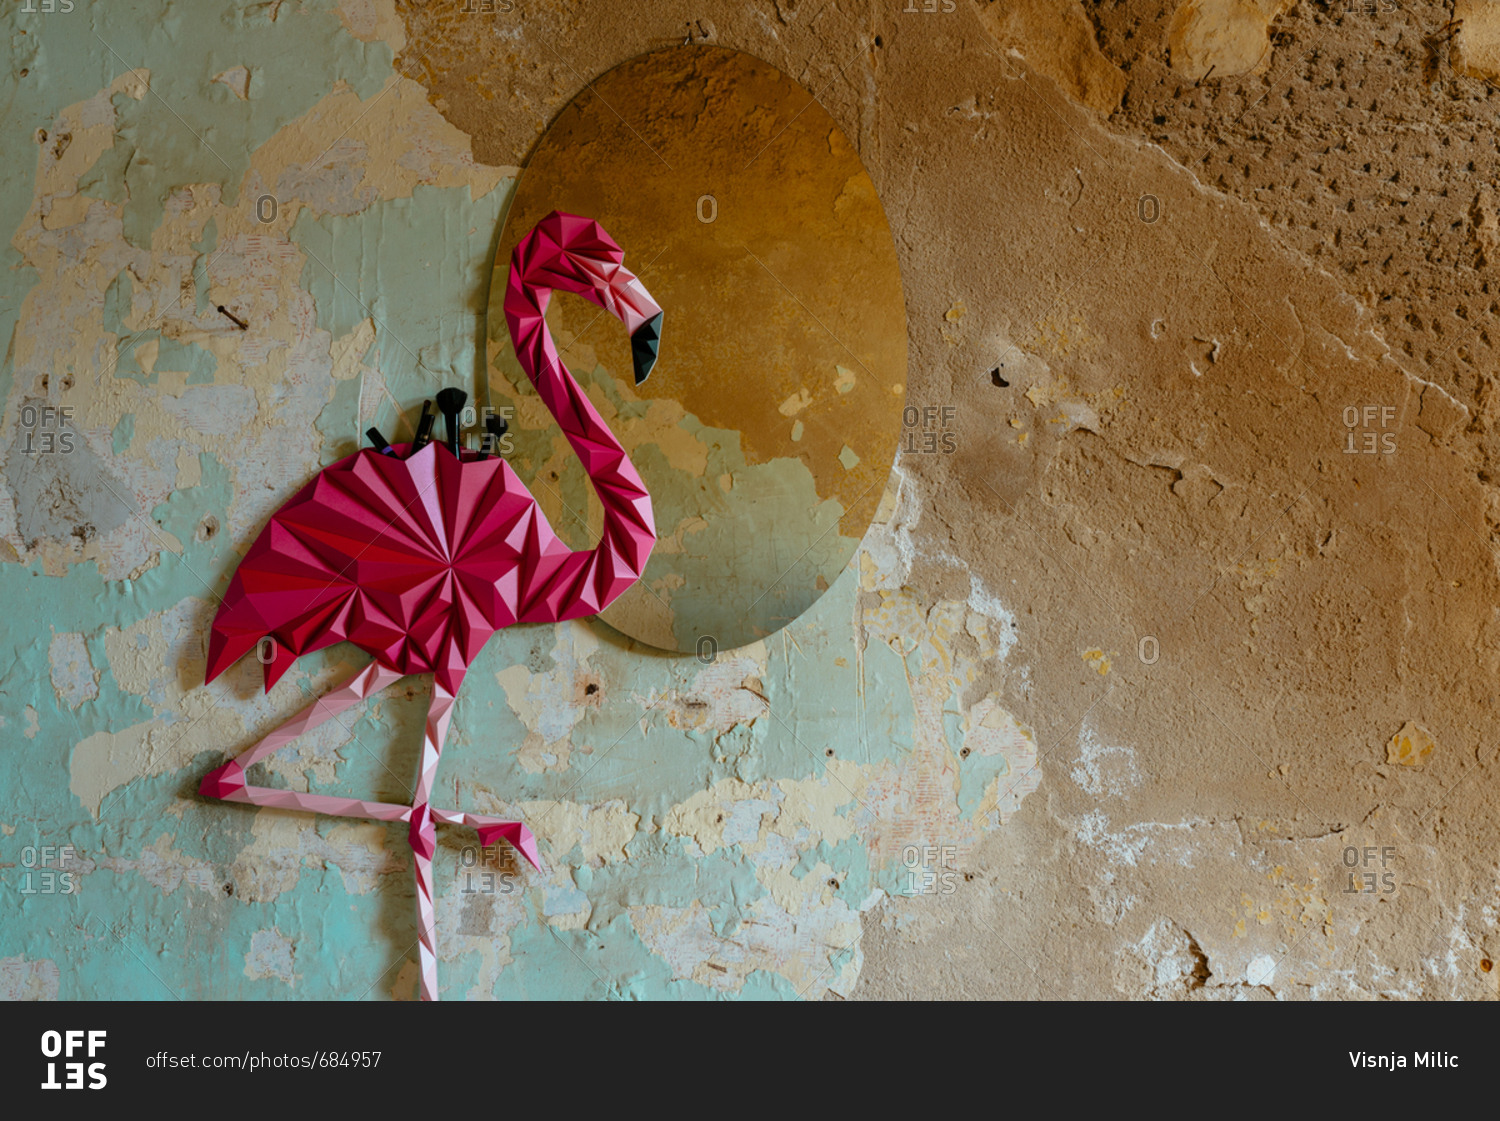 Origami flamingo bird made as home decoration shelf and a mirror